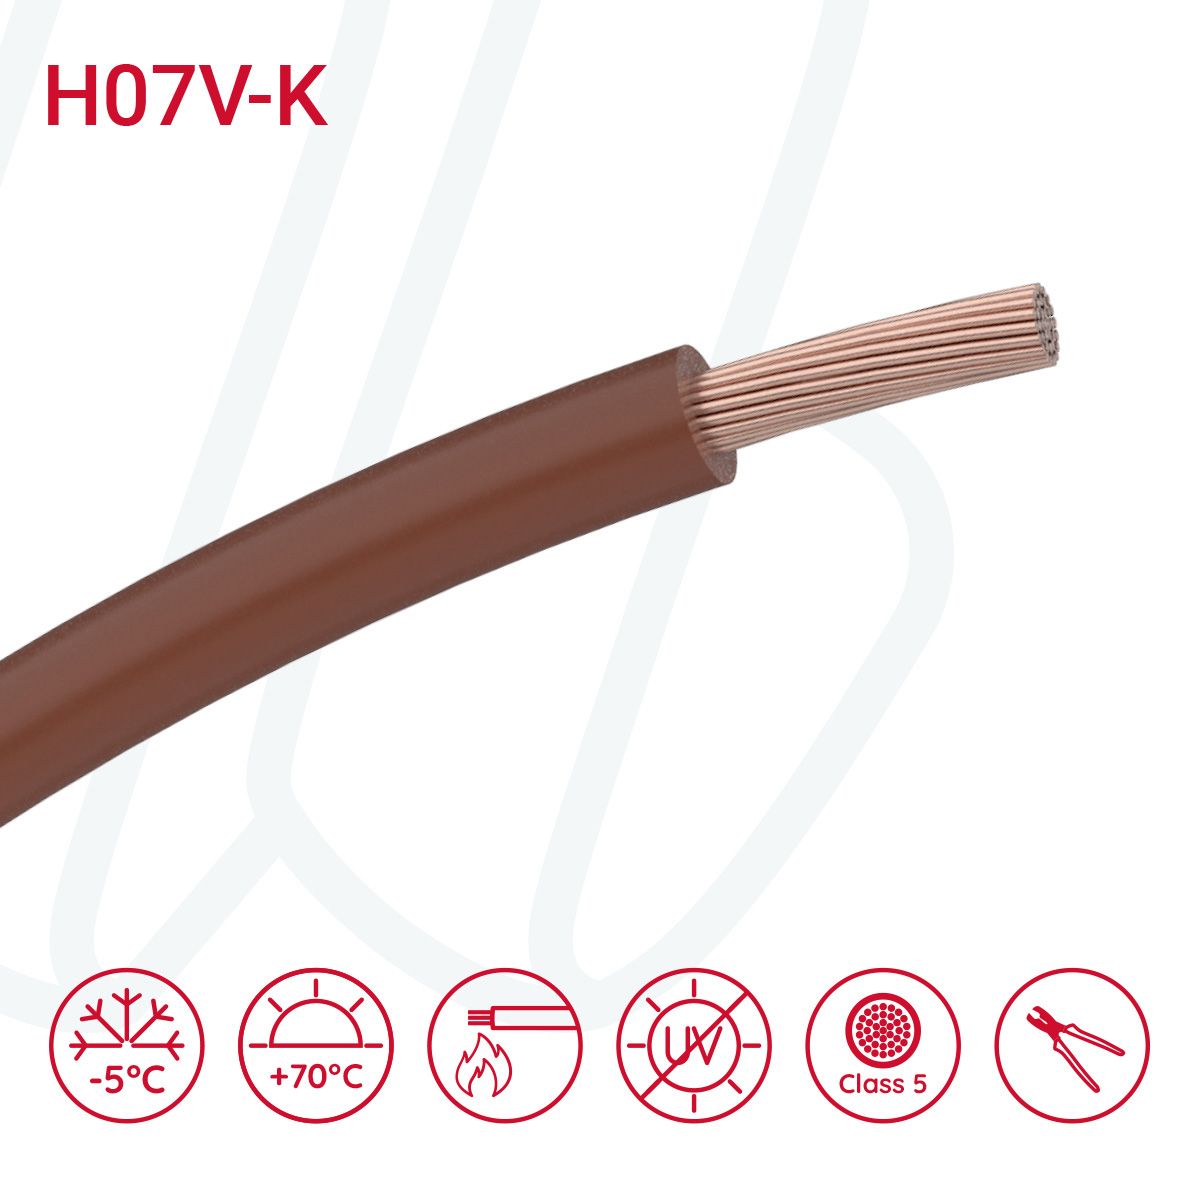 Провід монтажний гнучкий H07V-K 25 мм² коричневий, 01, 25